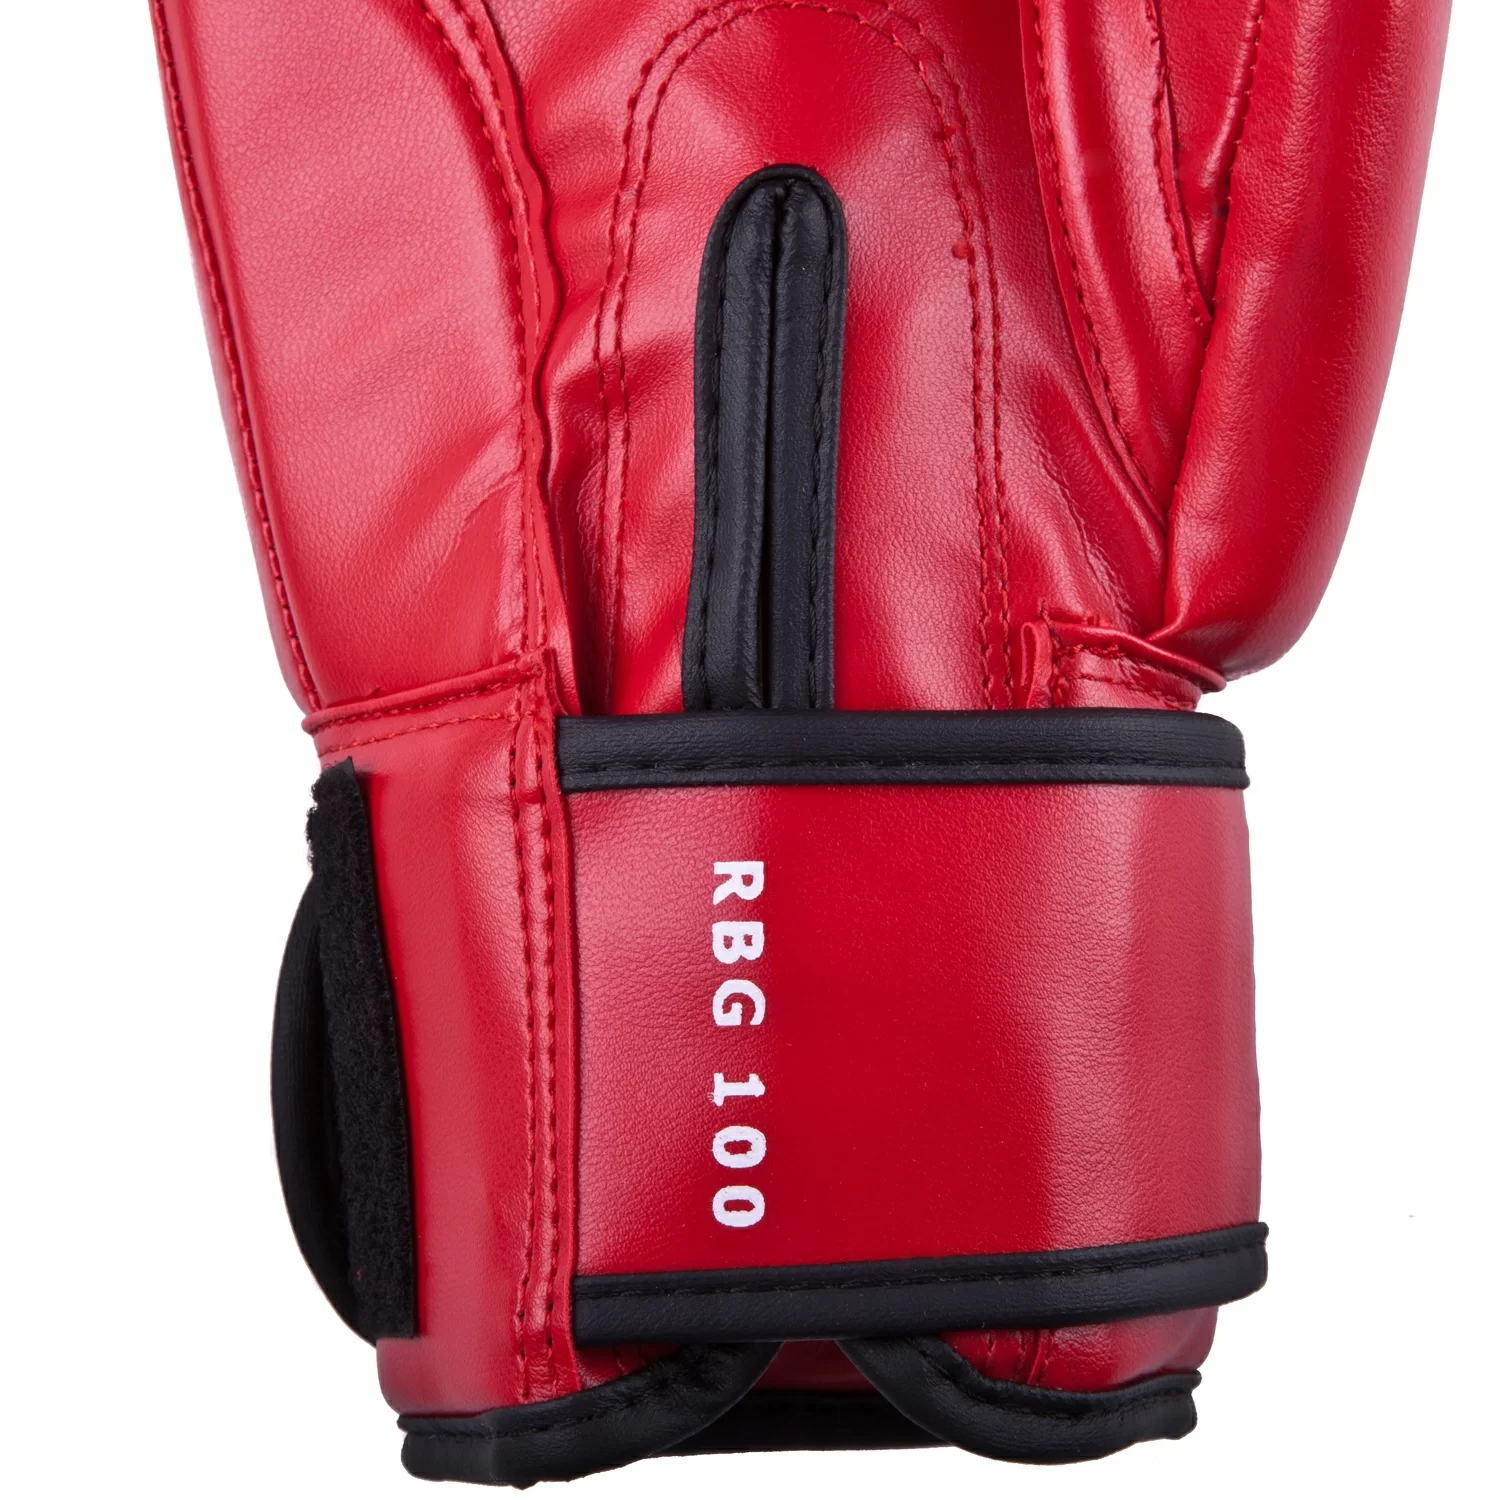 Реальное фото Перчатки боксерские Roomaif RBG-100 Dyex красные от магазина СпортСЕ